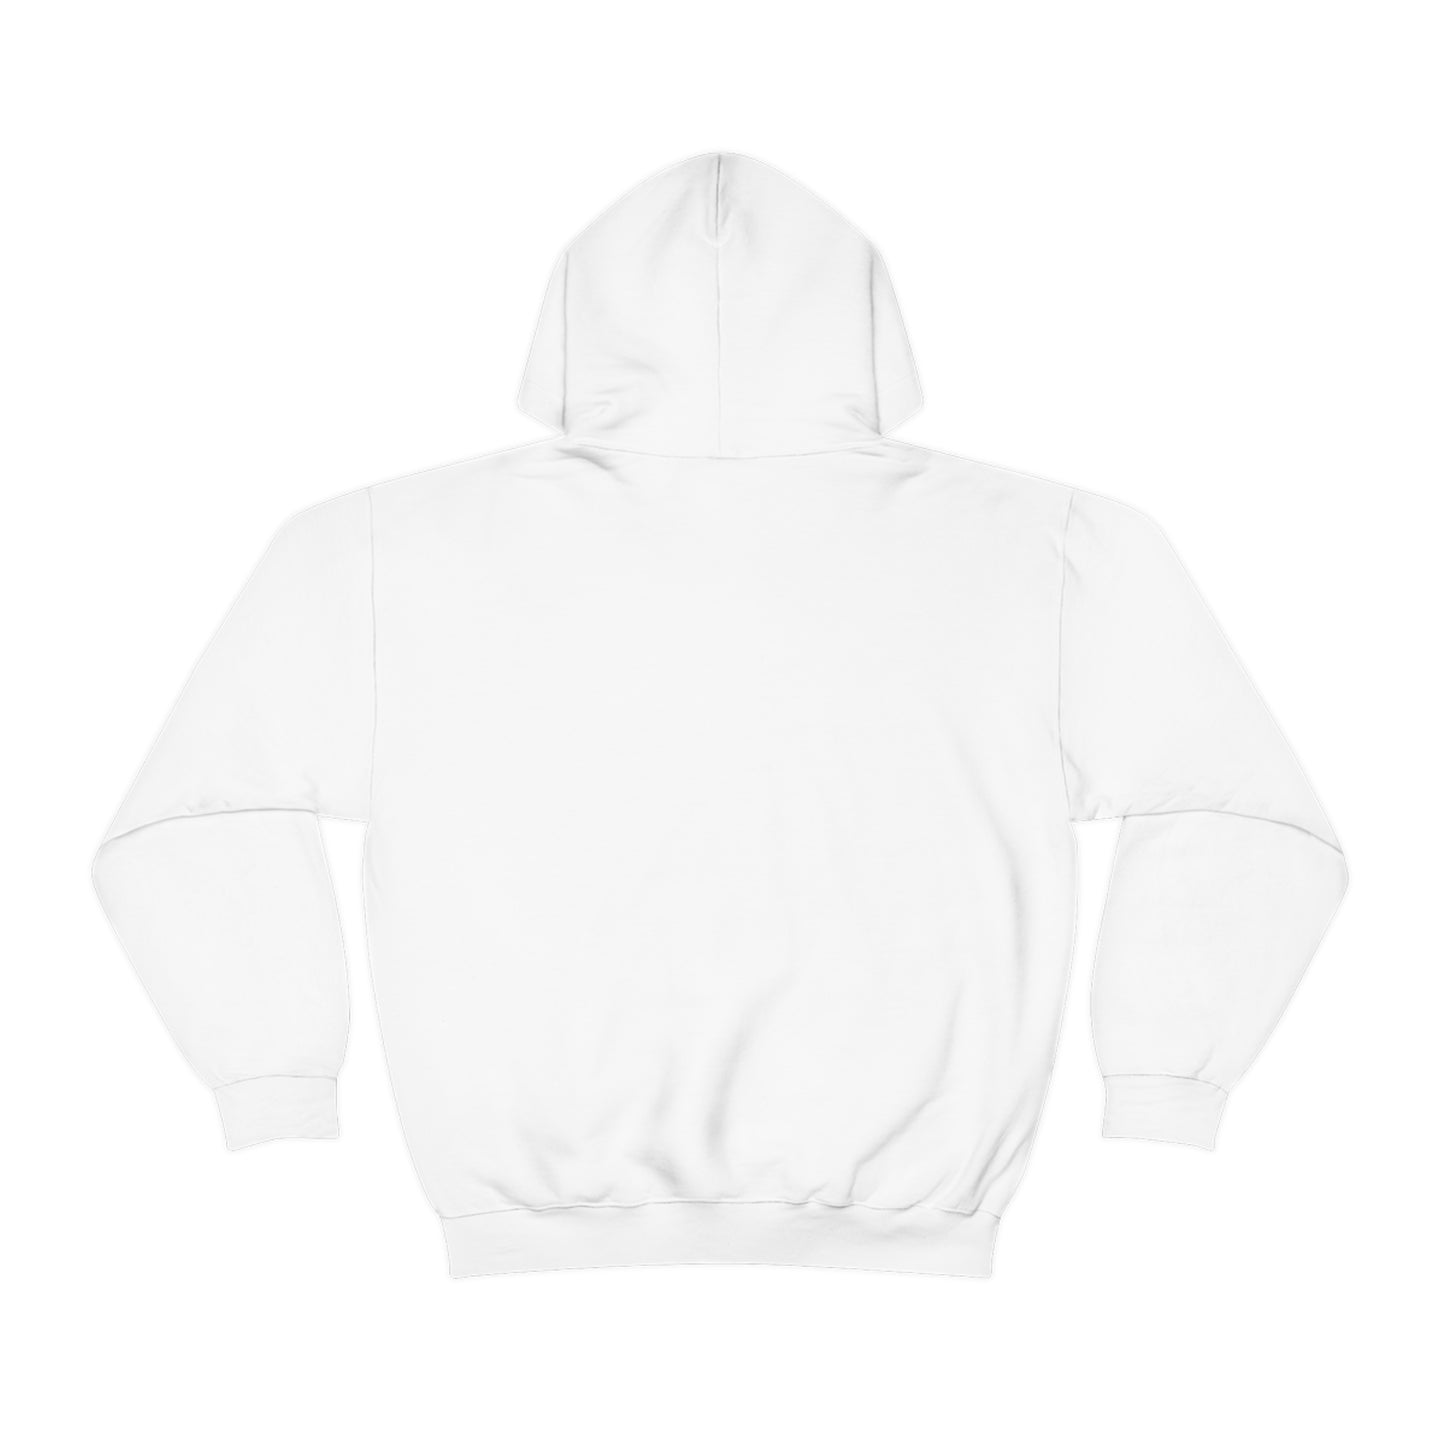 NYC (New York City) Hoodie Sweatshirt